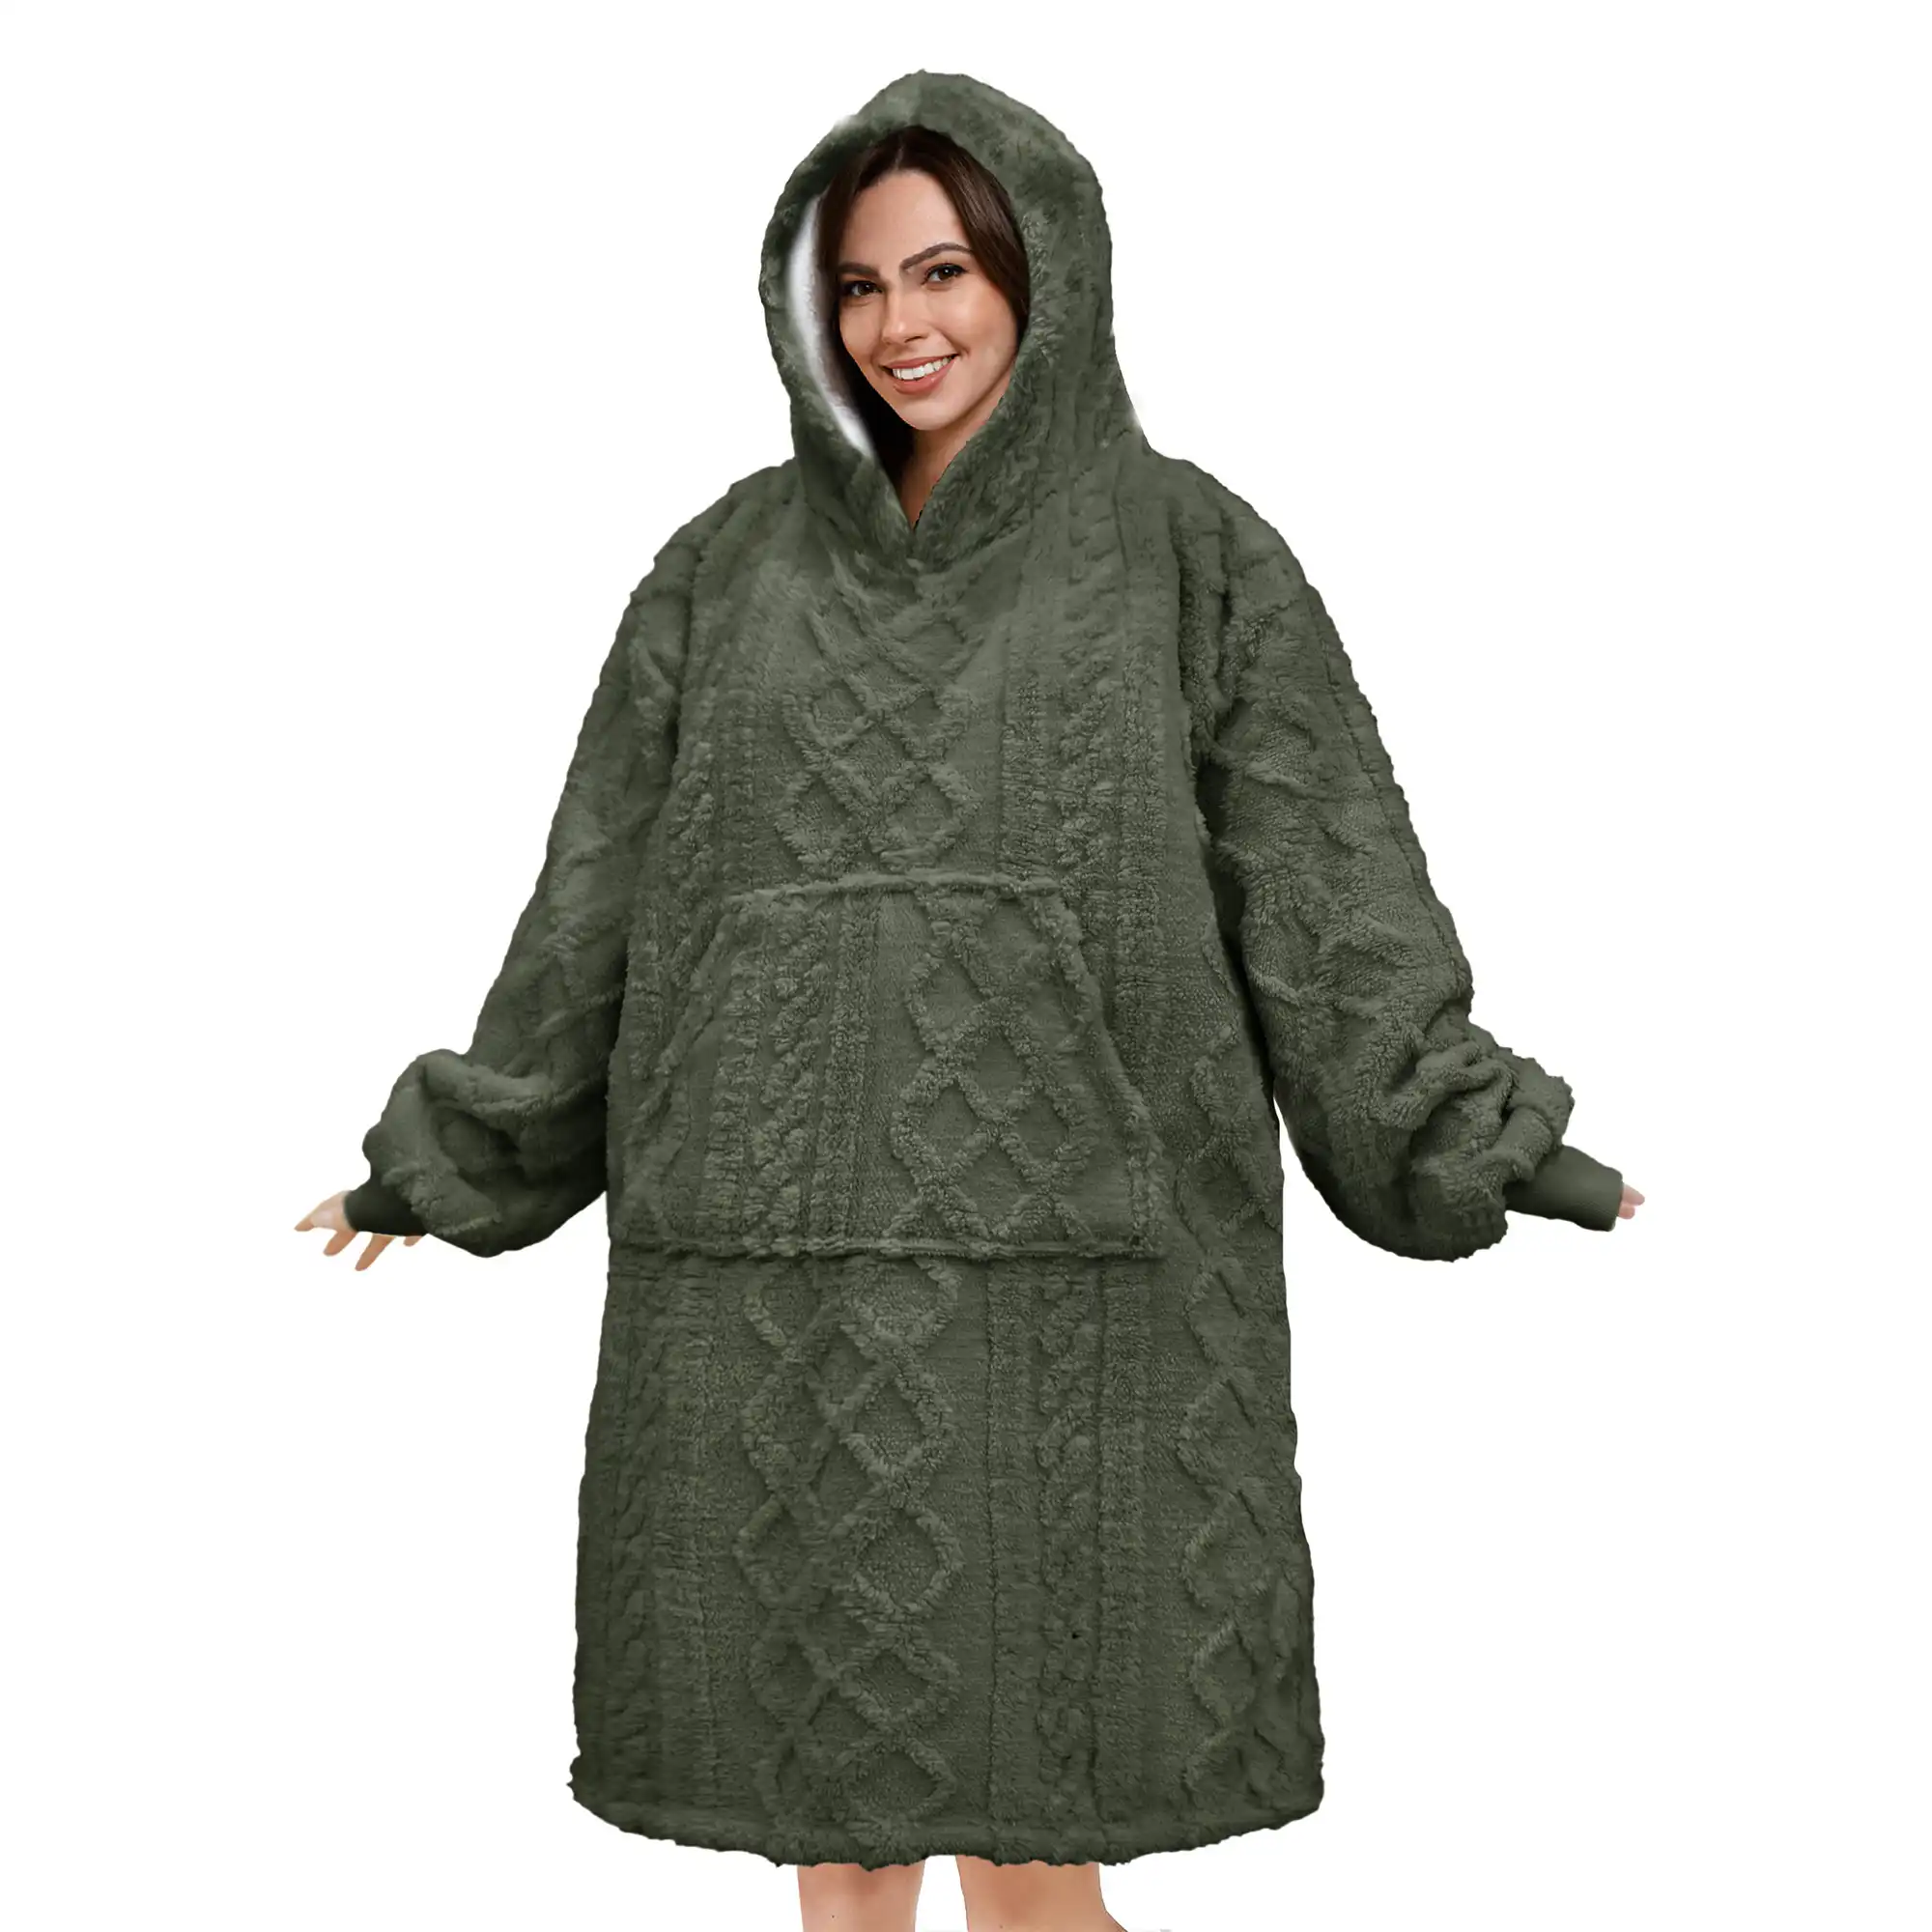 SOPHIE Oversized Hoodie - 70x110 cm - Hoodie & deken in één - extra grote kabeltrui met capuchon - Military Olive - groen